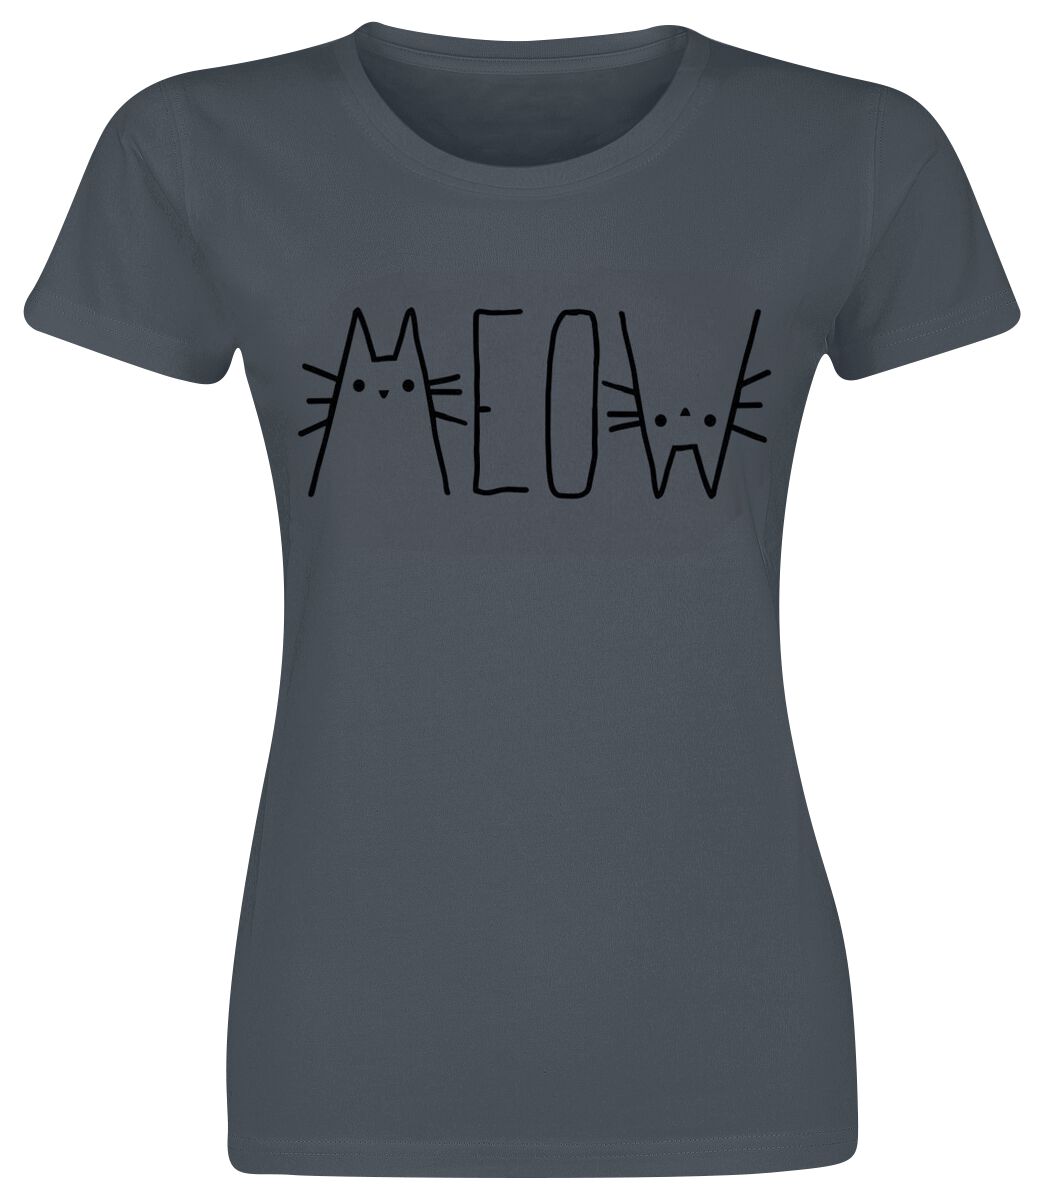 T-Shirt Manches courtes Fun de Tierisch - MEOW - S à XXL - pour Femme - gris foncé